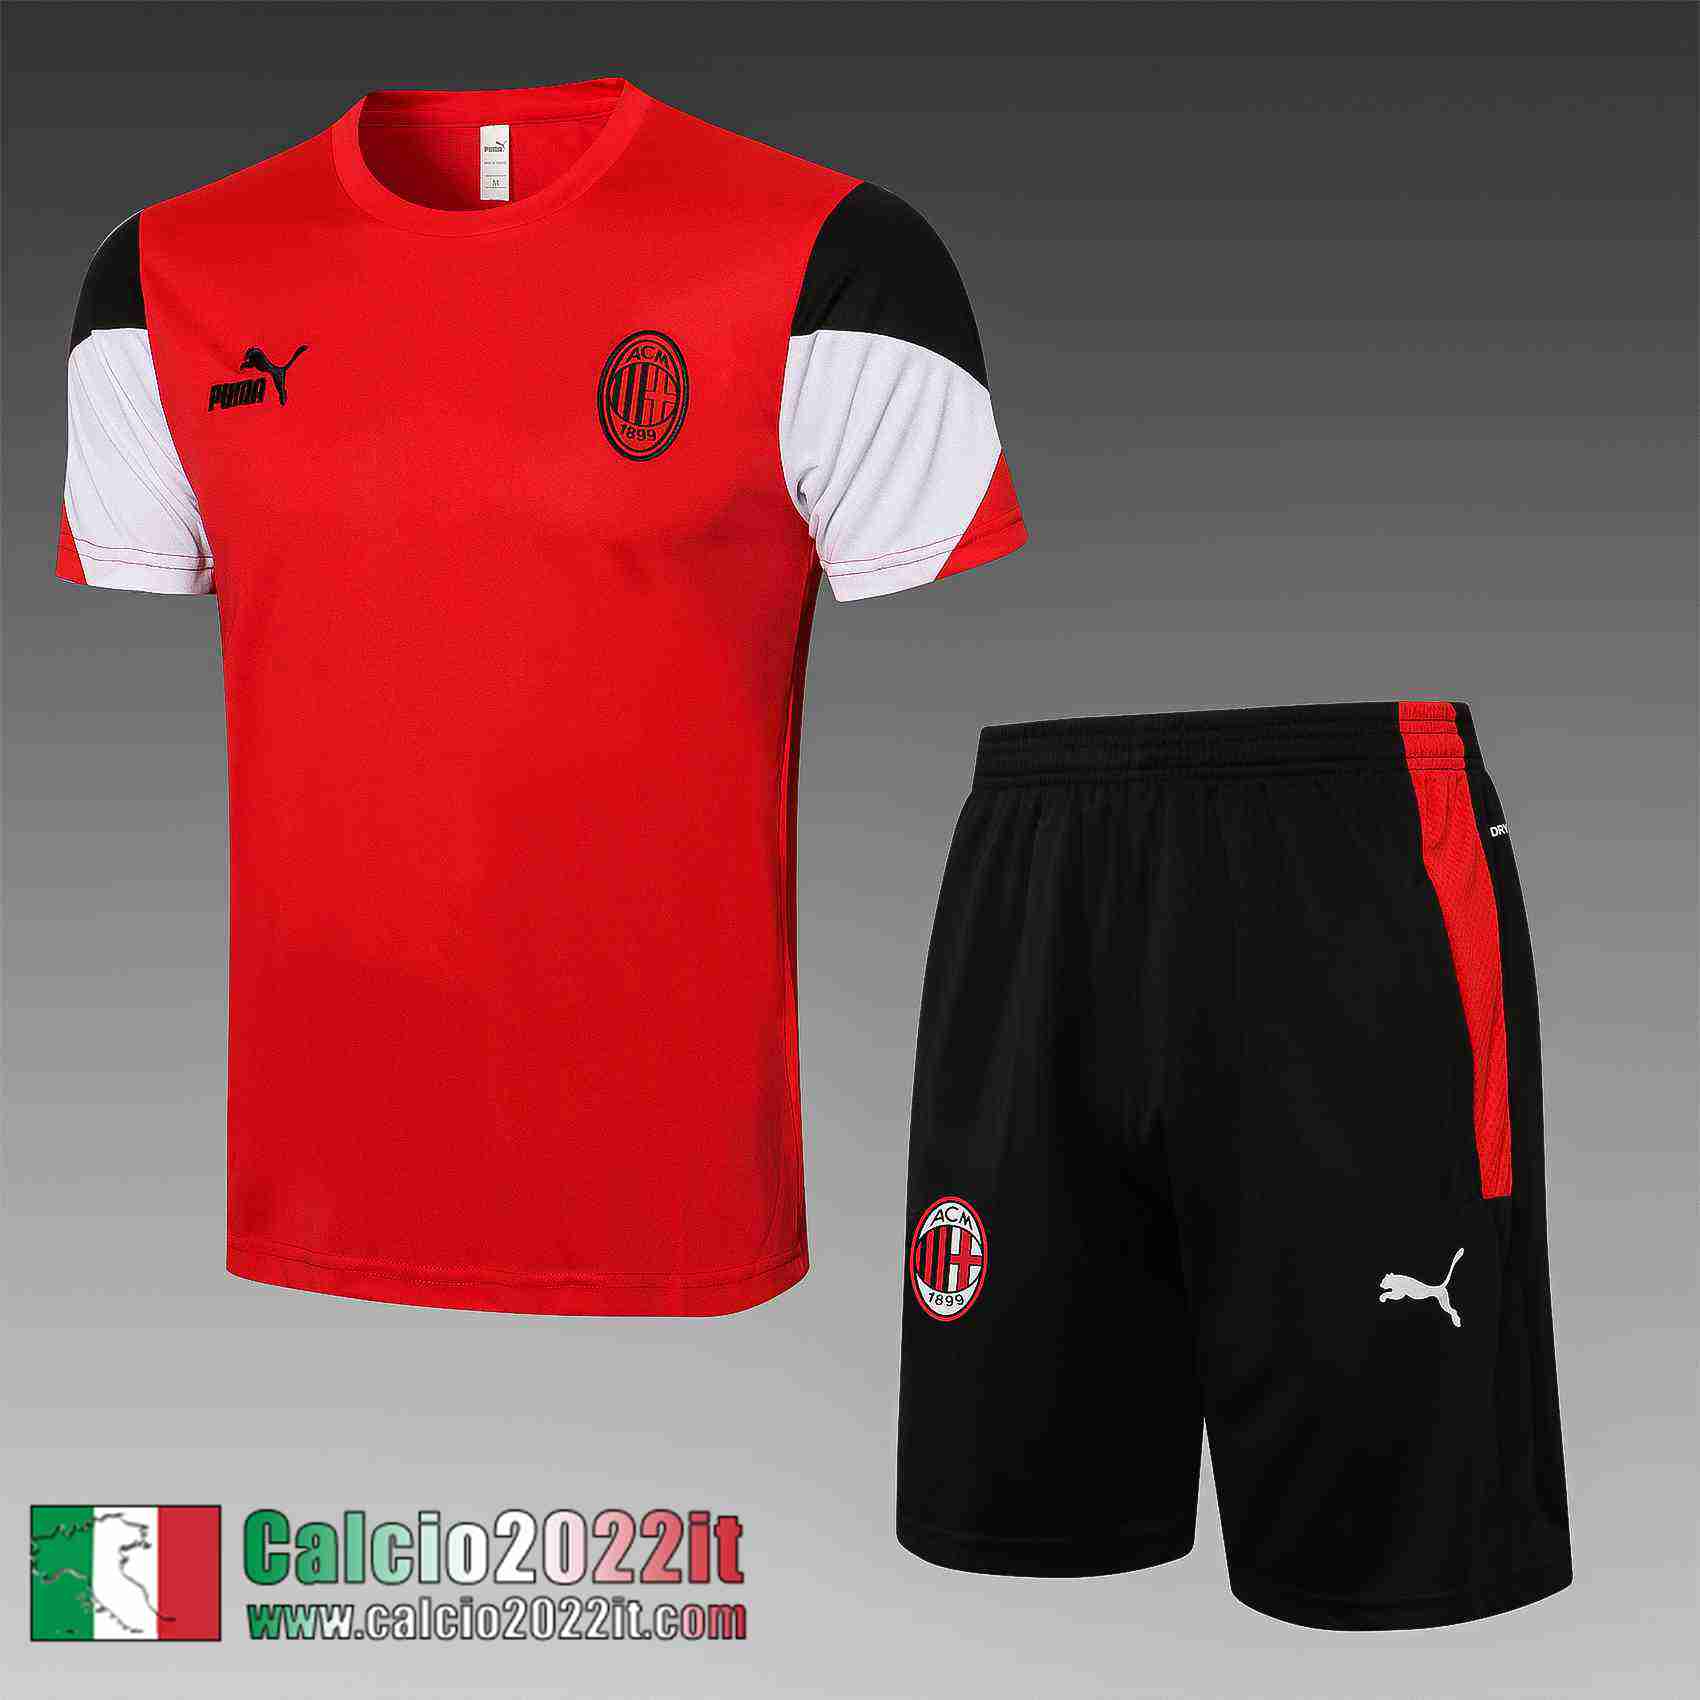 AC Milan T-shirt rosso Uomo 2021 2022 PL239